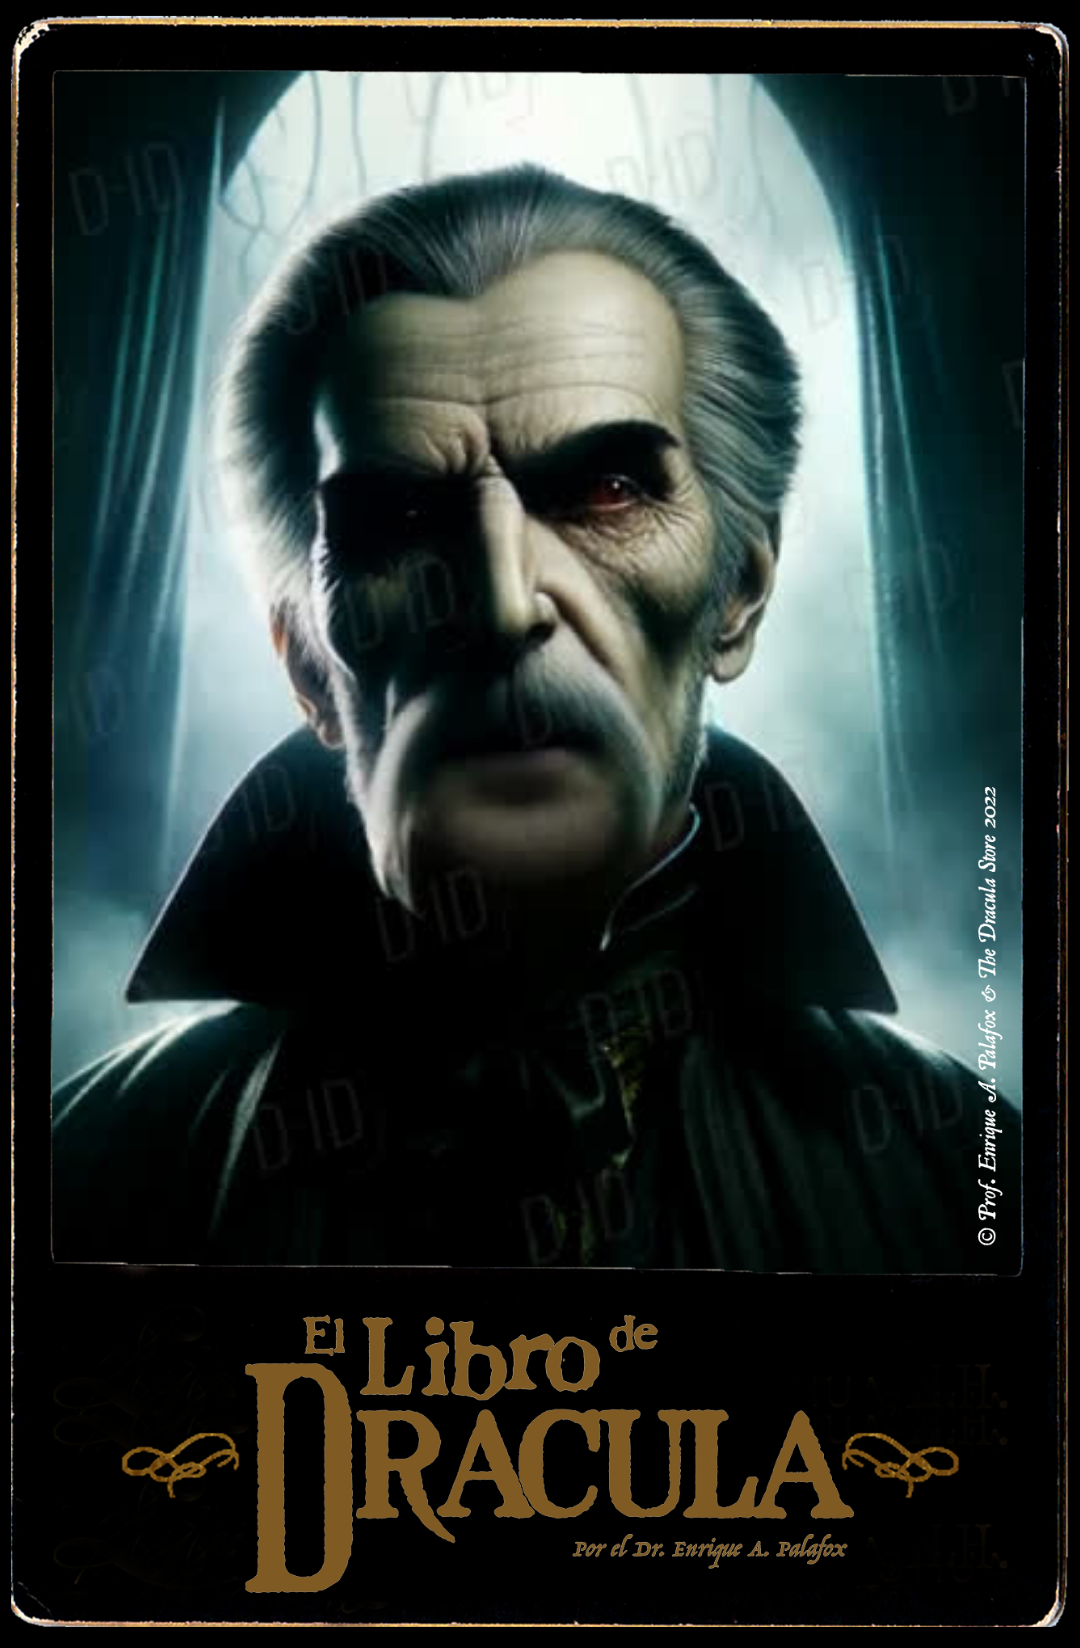 Count Dracula, Vampedia